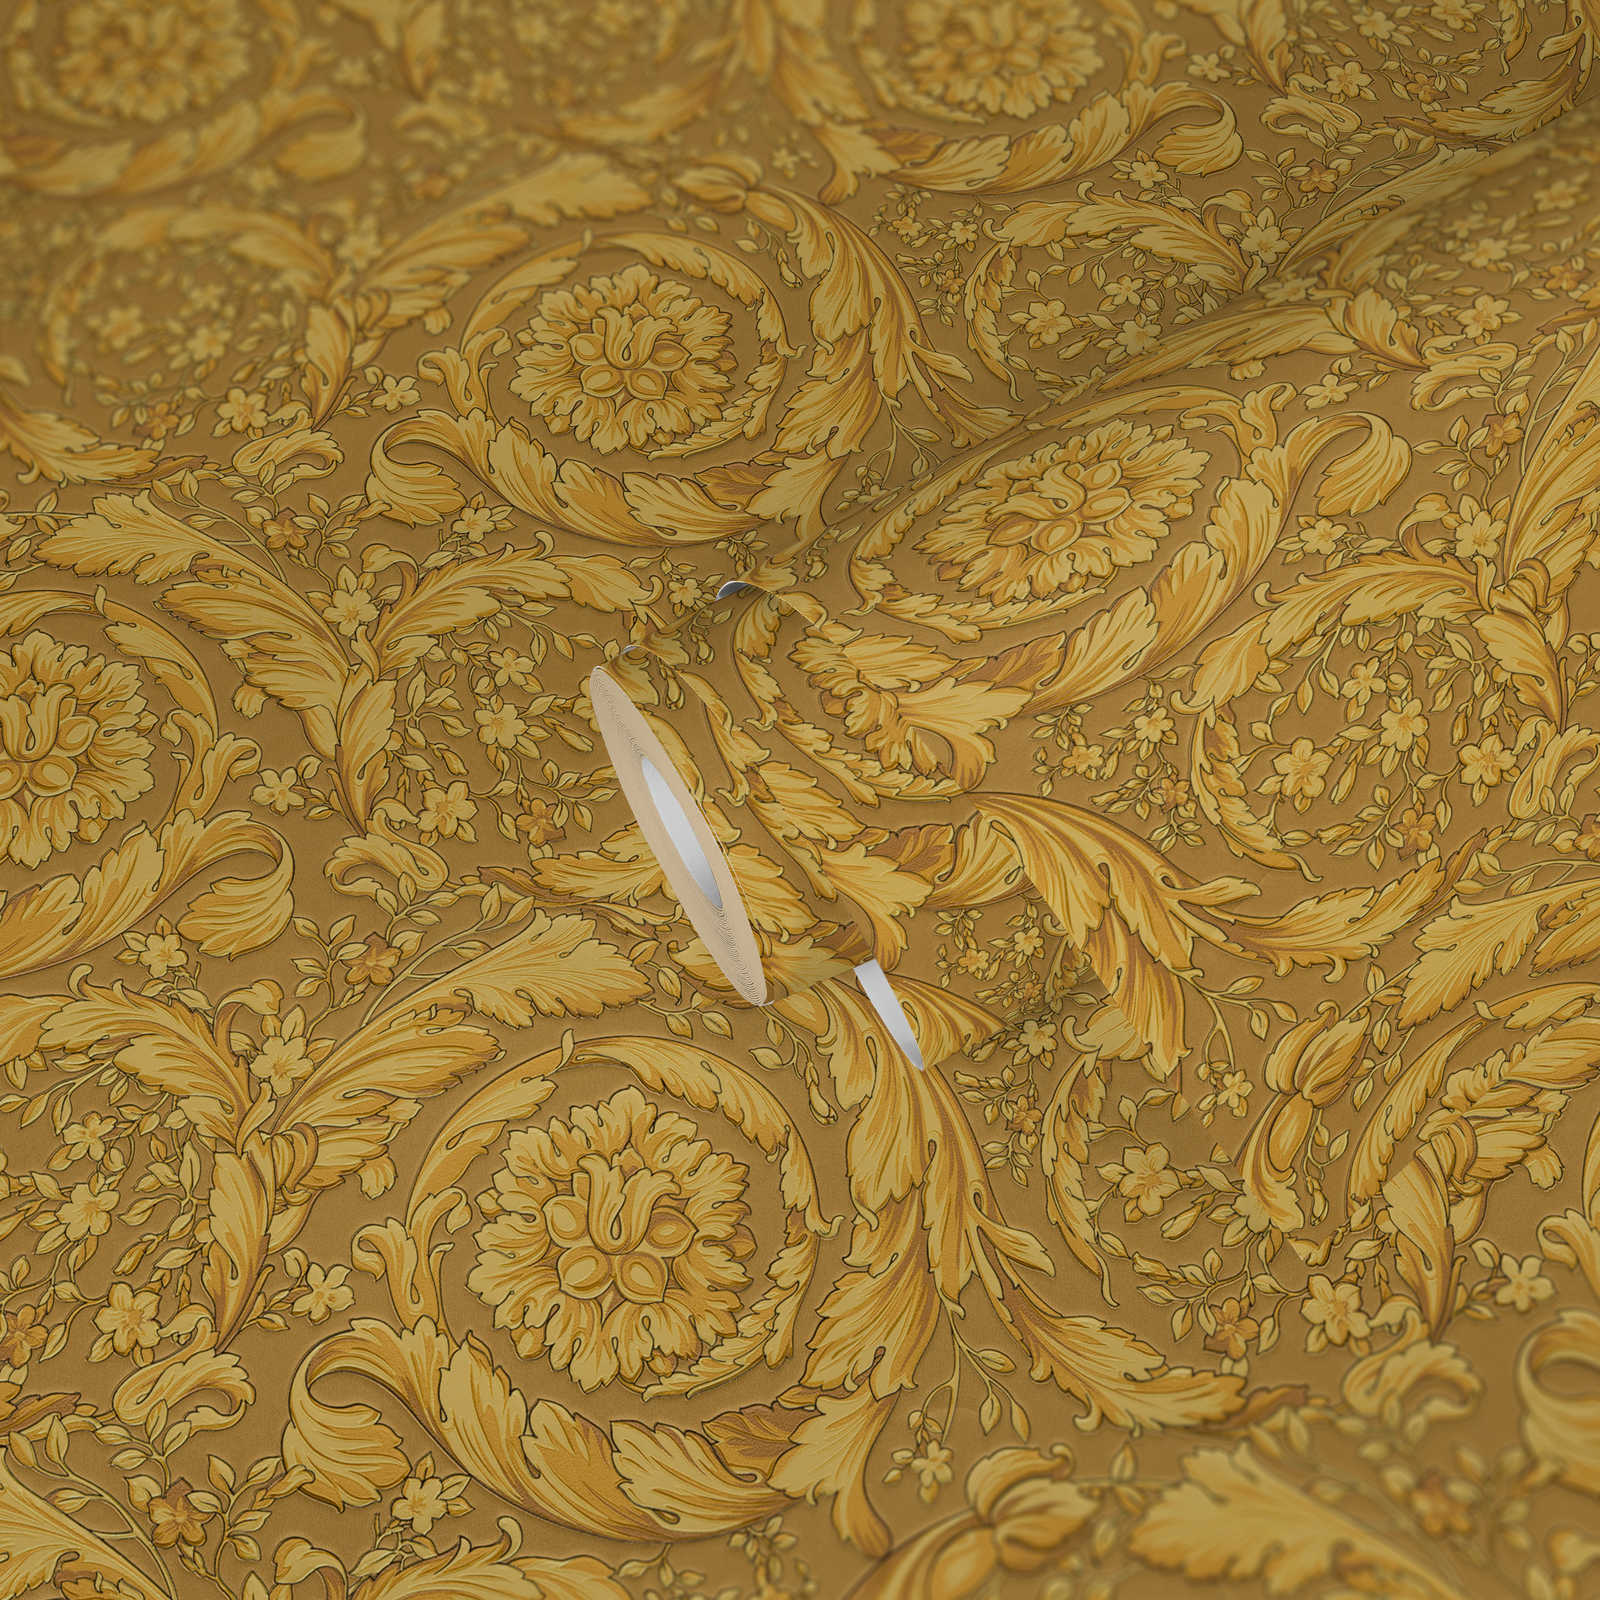             VERSACE Papier peint avec motif floral ornemental - or
        